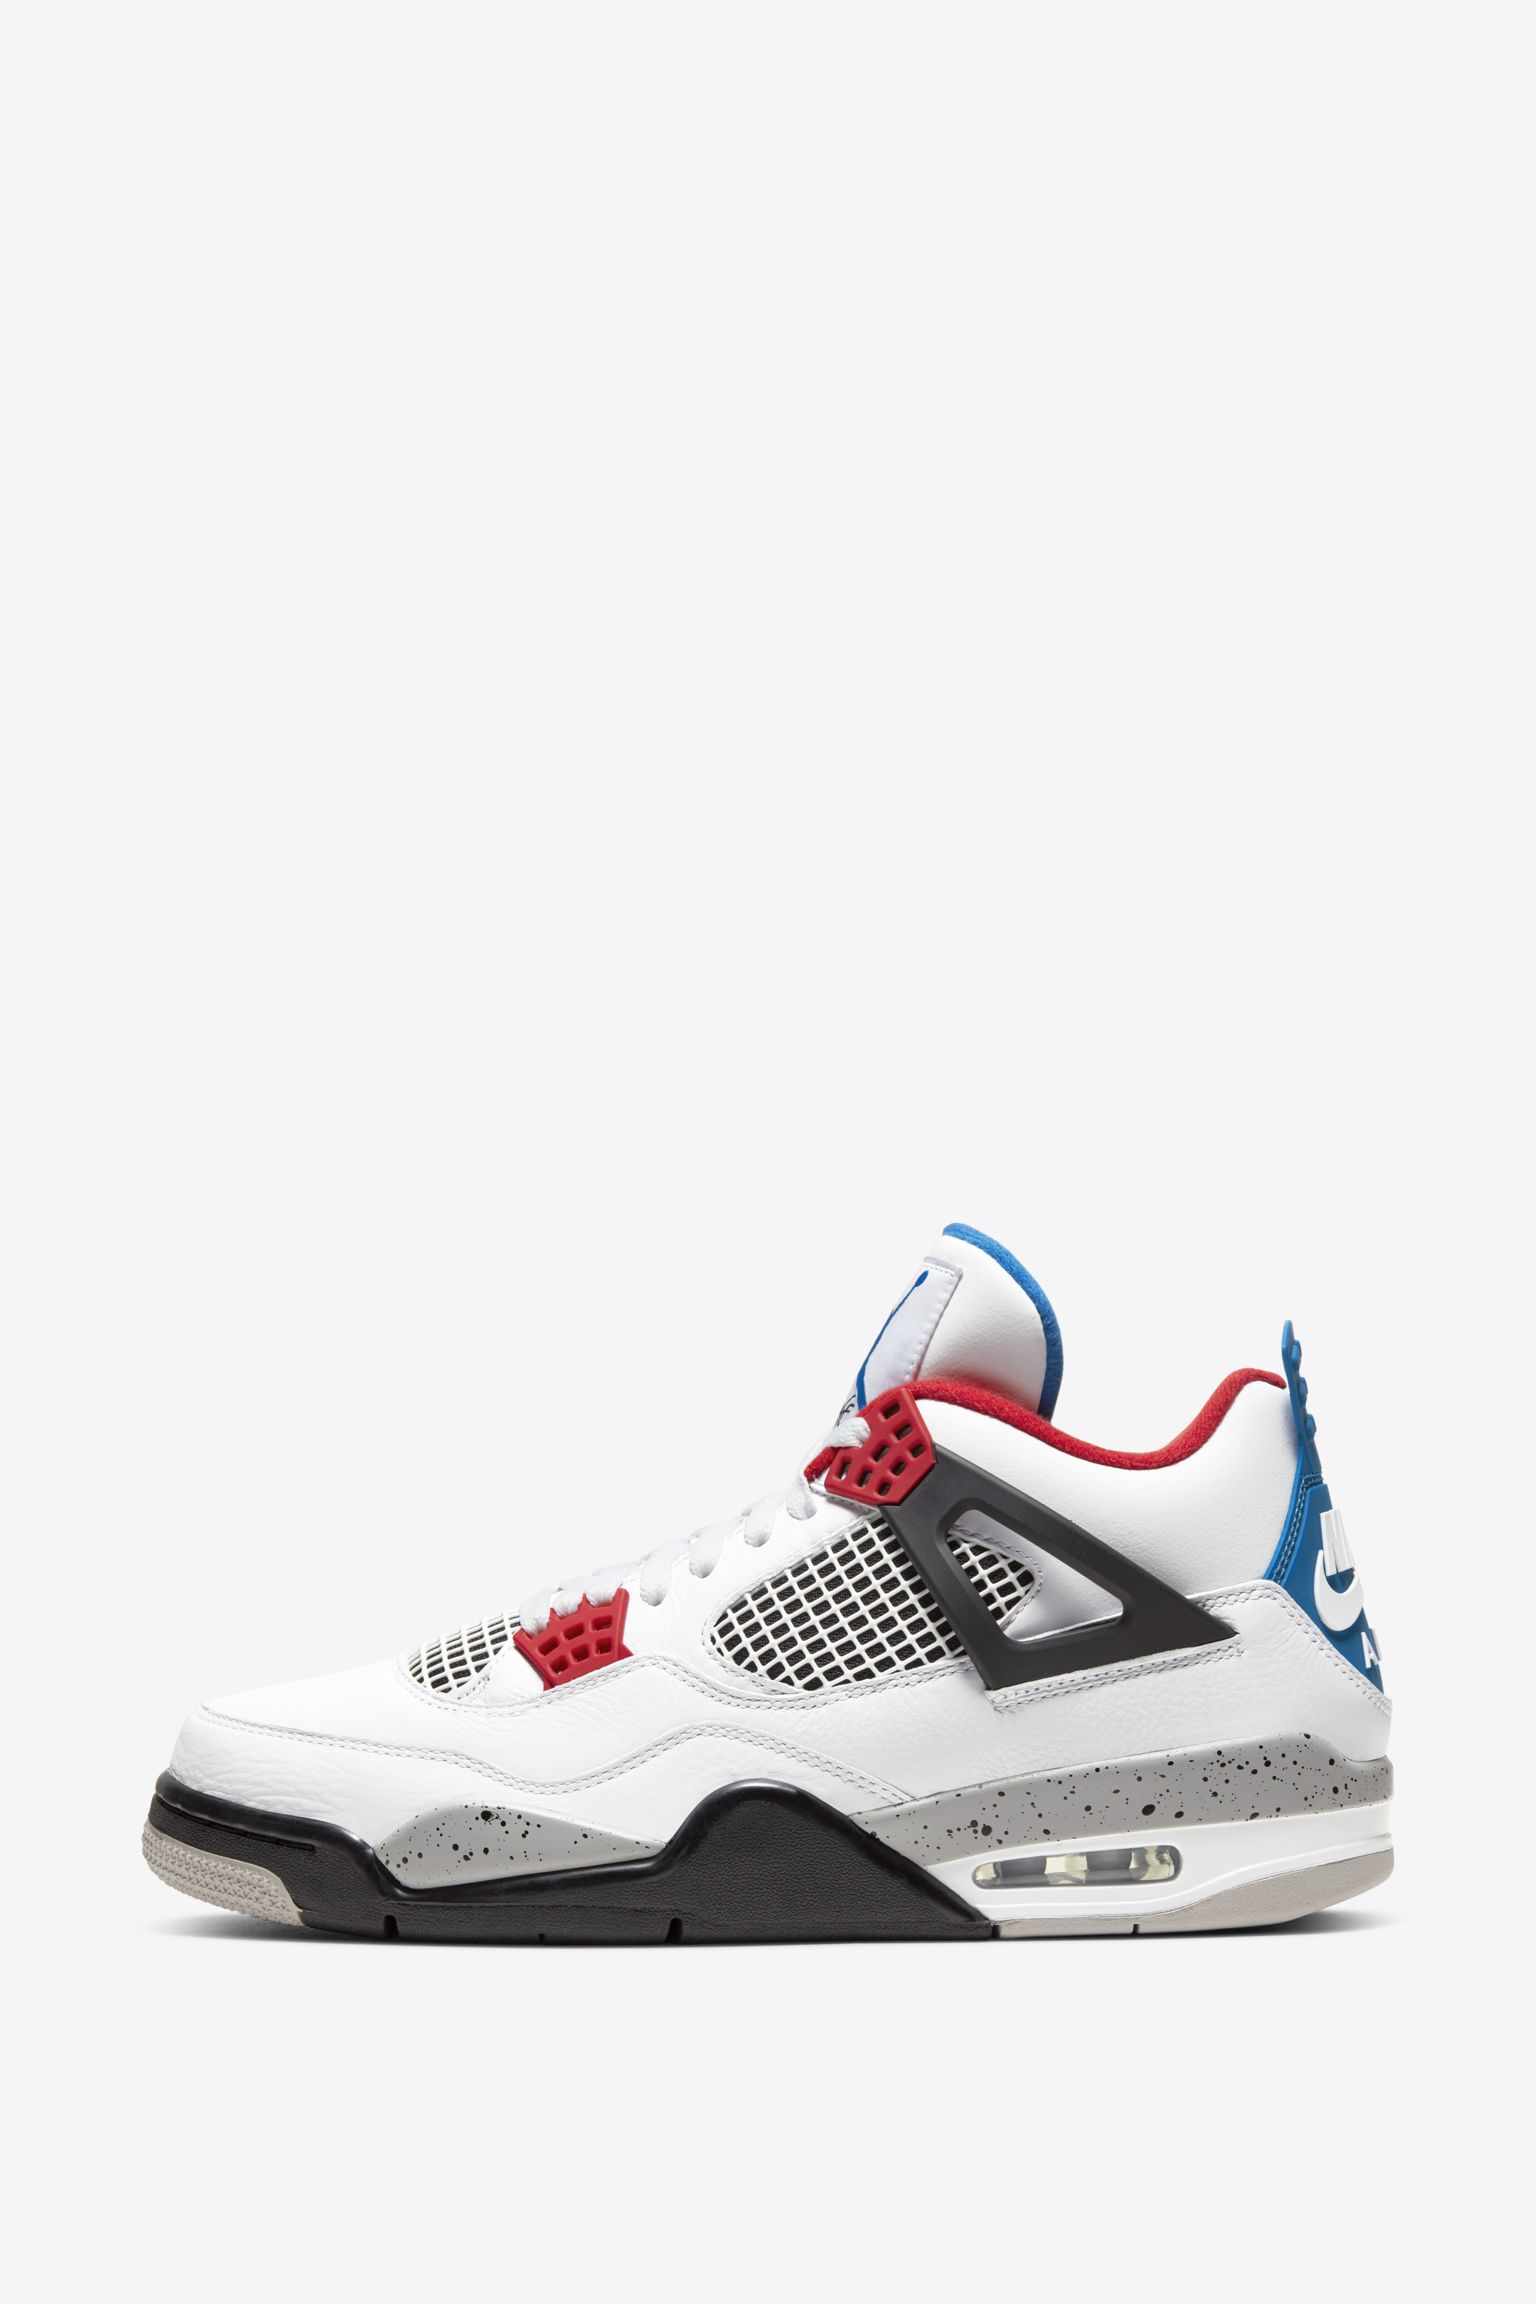 Date de sortie de la Air Jordan 4 Retro « What The ». Nike SNKRS CH